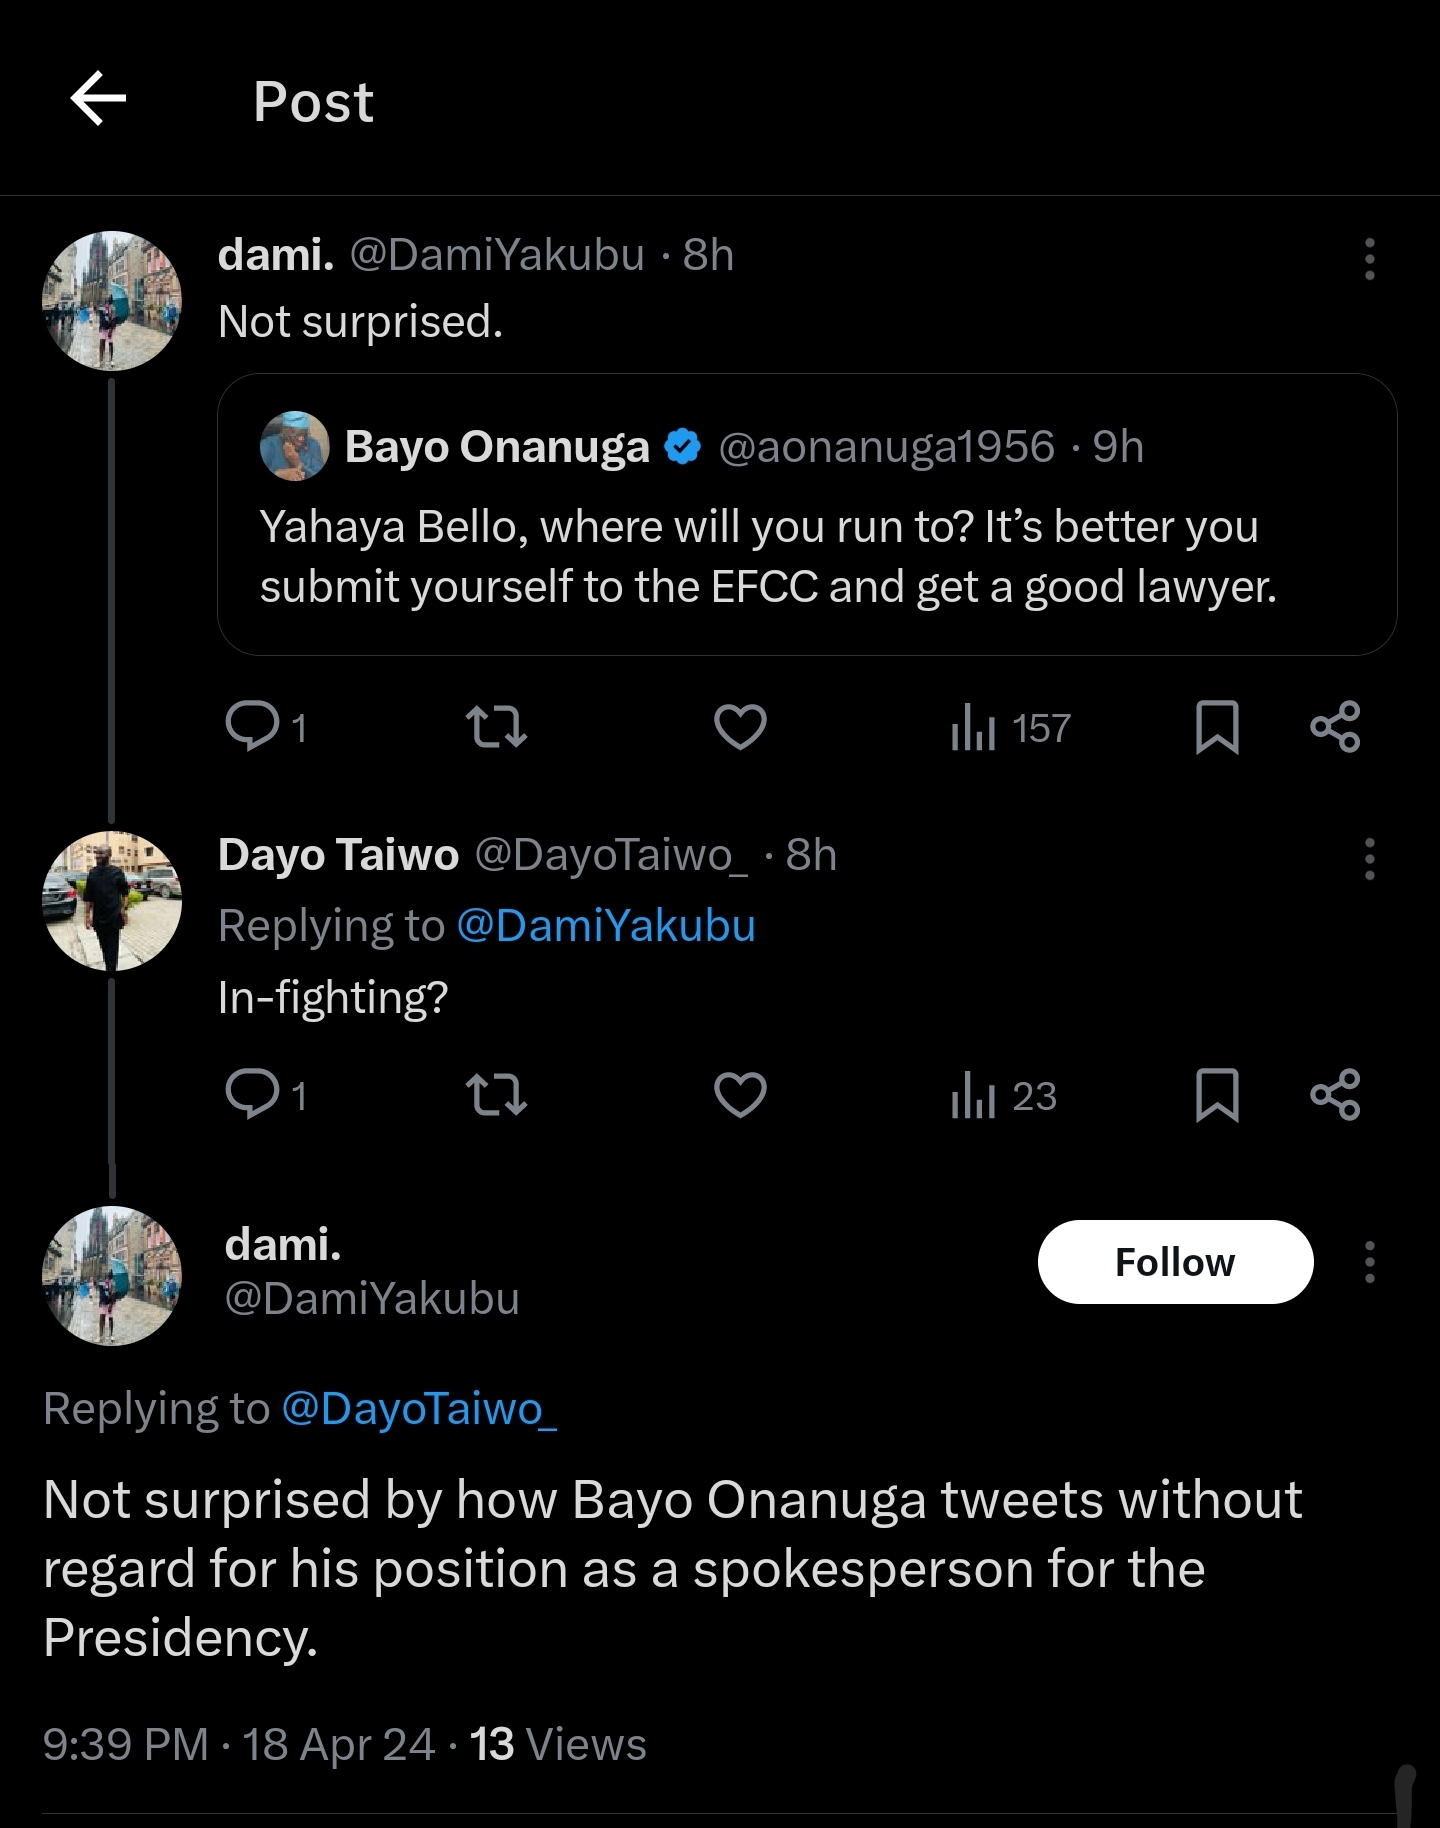 Dami Yakubu criticising Bayo Onanuga